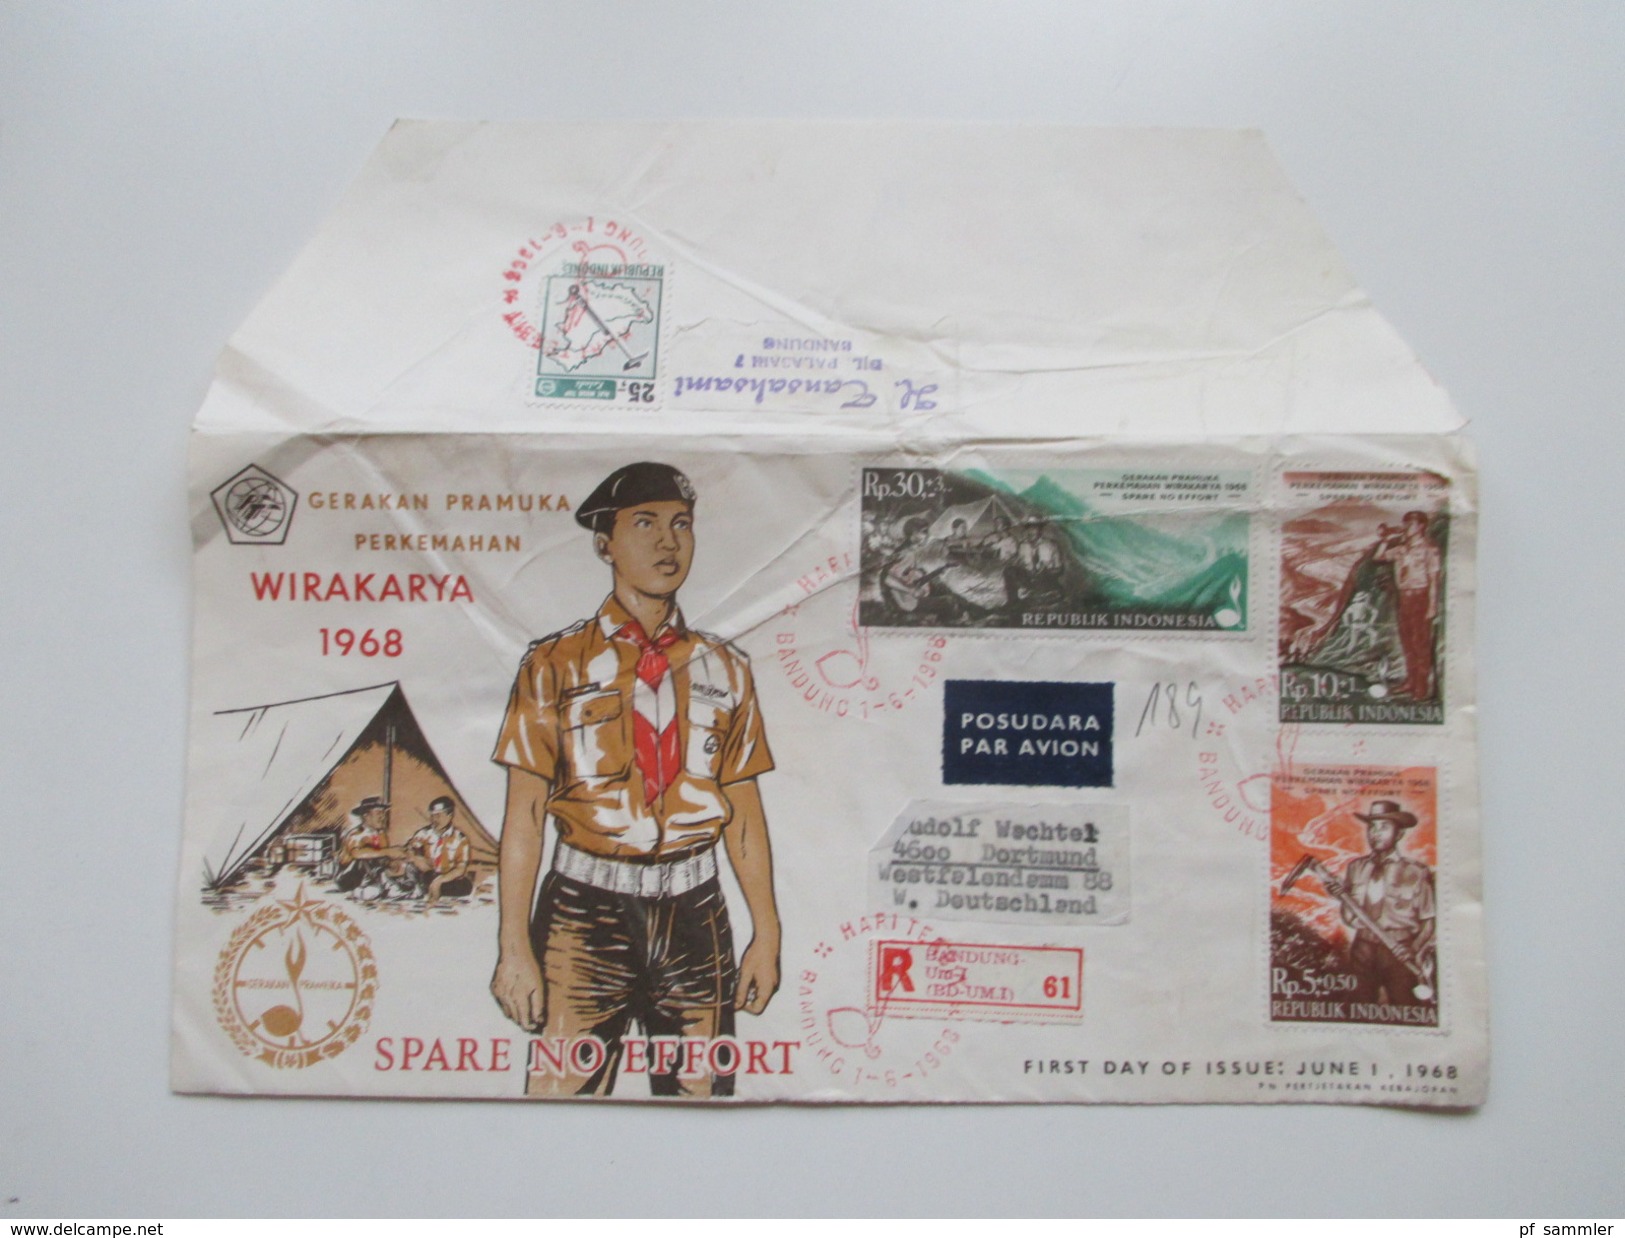 Indonesien 125 stk. 1954 - 84 FDC / R-Briefe / Luftpost alles echt gelaufen! Einige Blocks 80er Jahre und 1 Numisbrief.